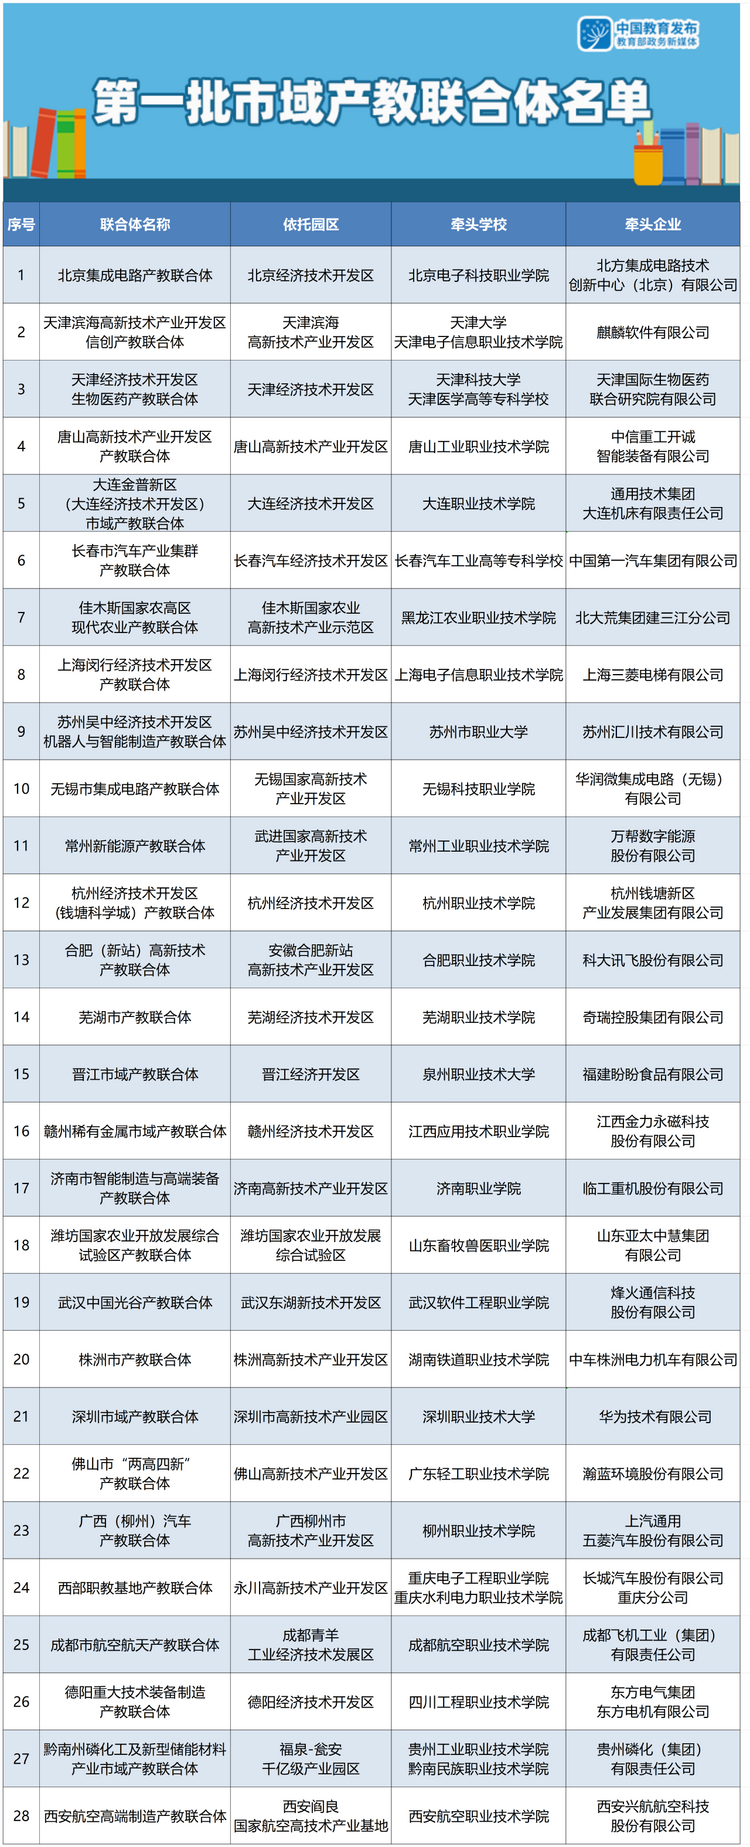 黑龙江入选！教育部公布第一批市域产教联合体名单